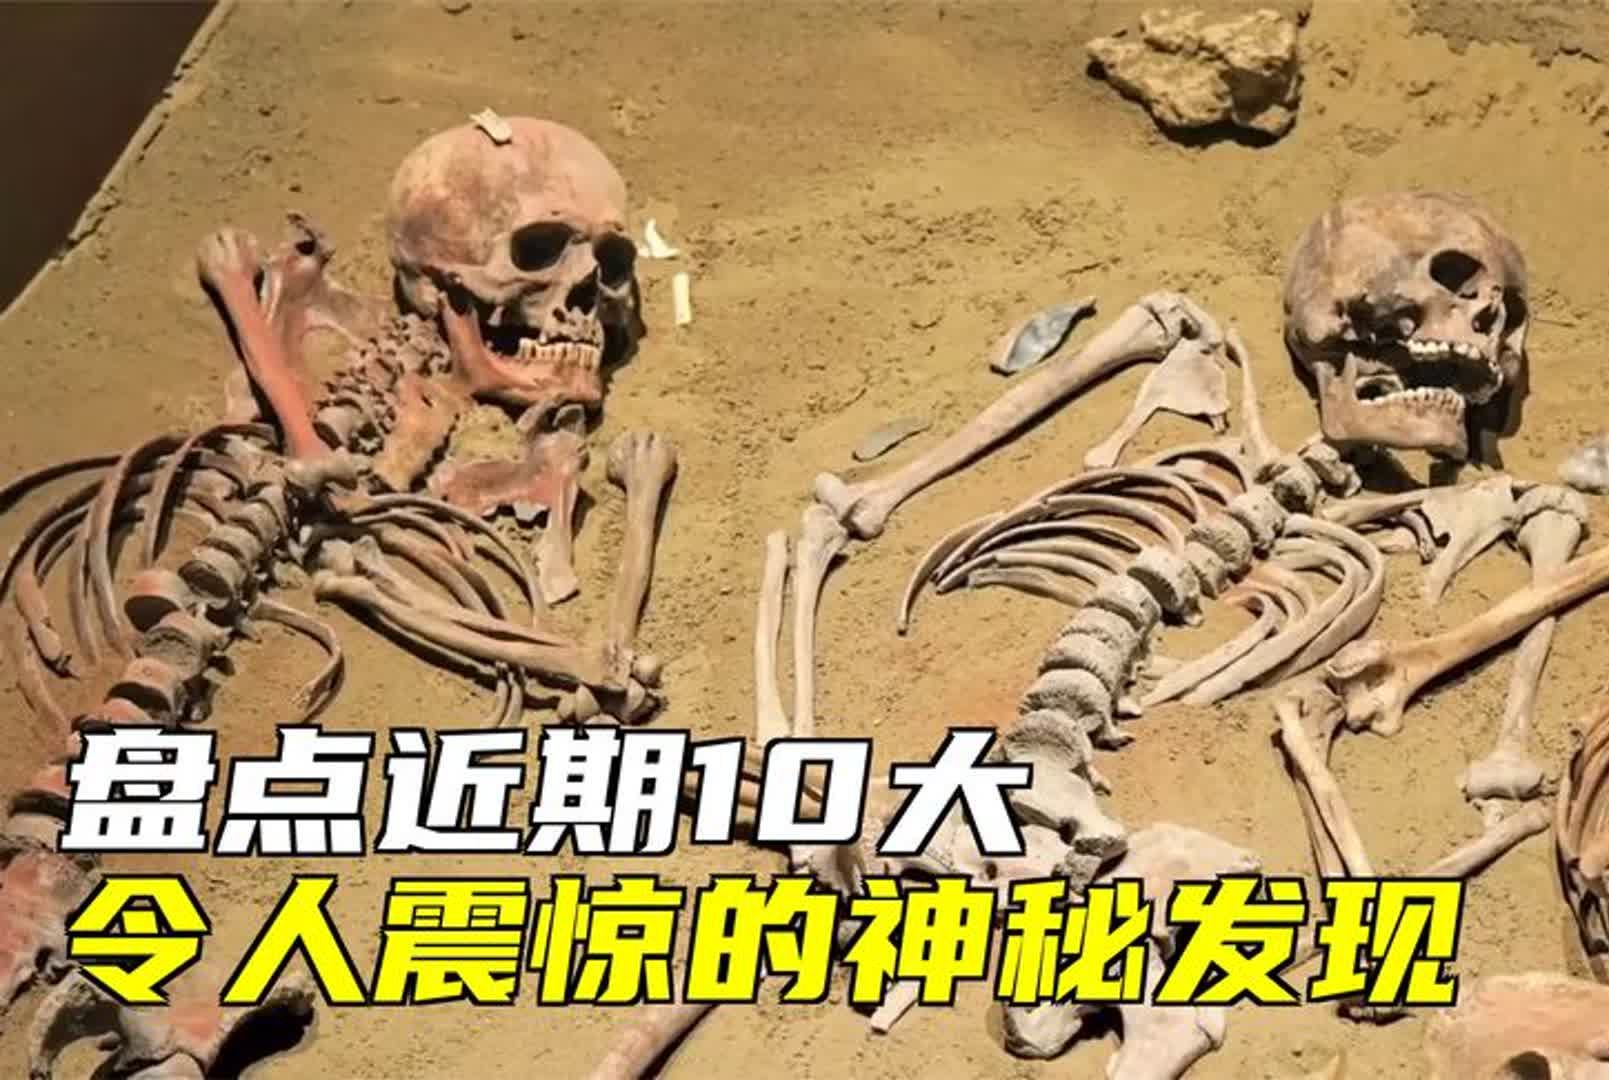 古马骨架、中国井里巨大头骨、巨大行星等10大令人震惊的神秘发现